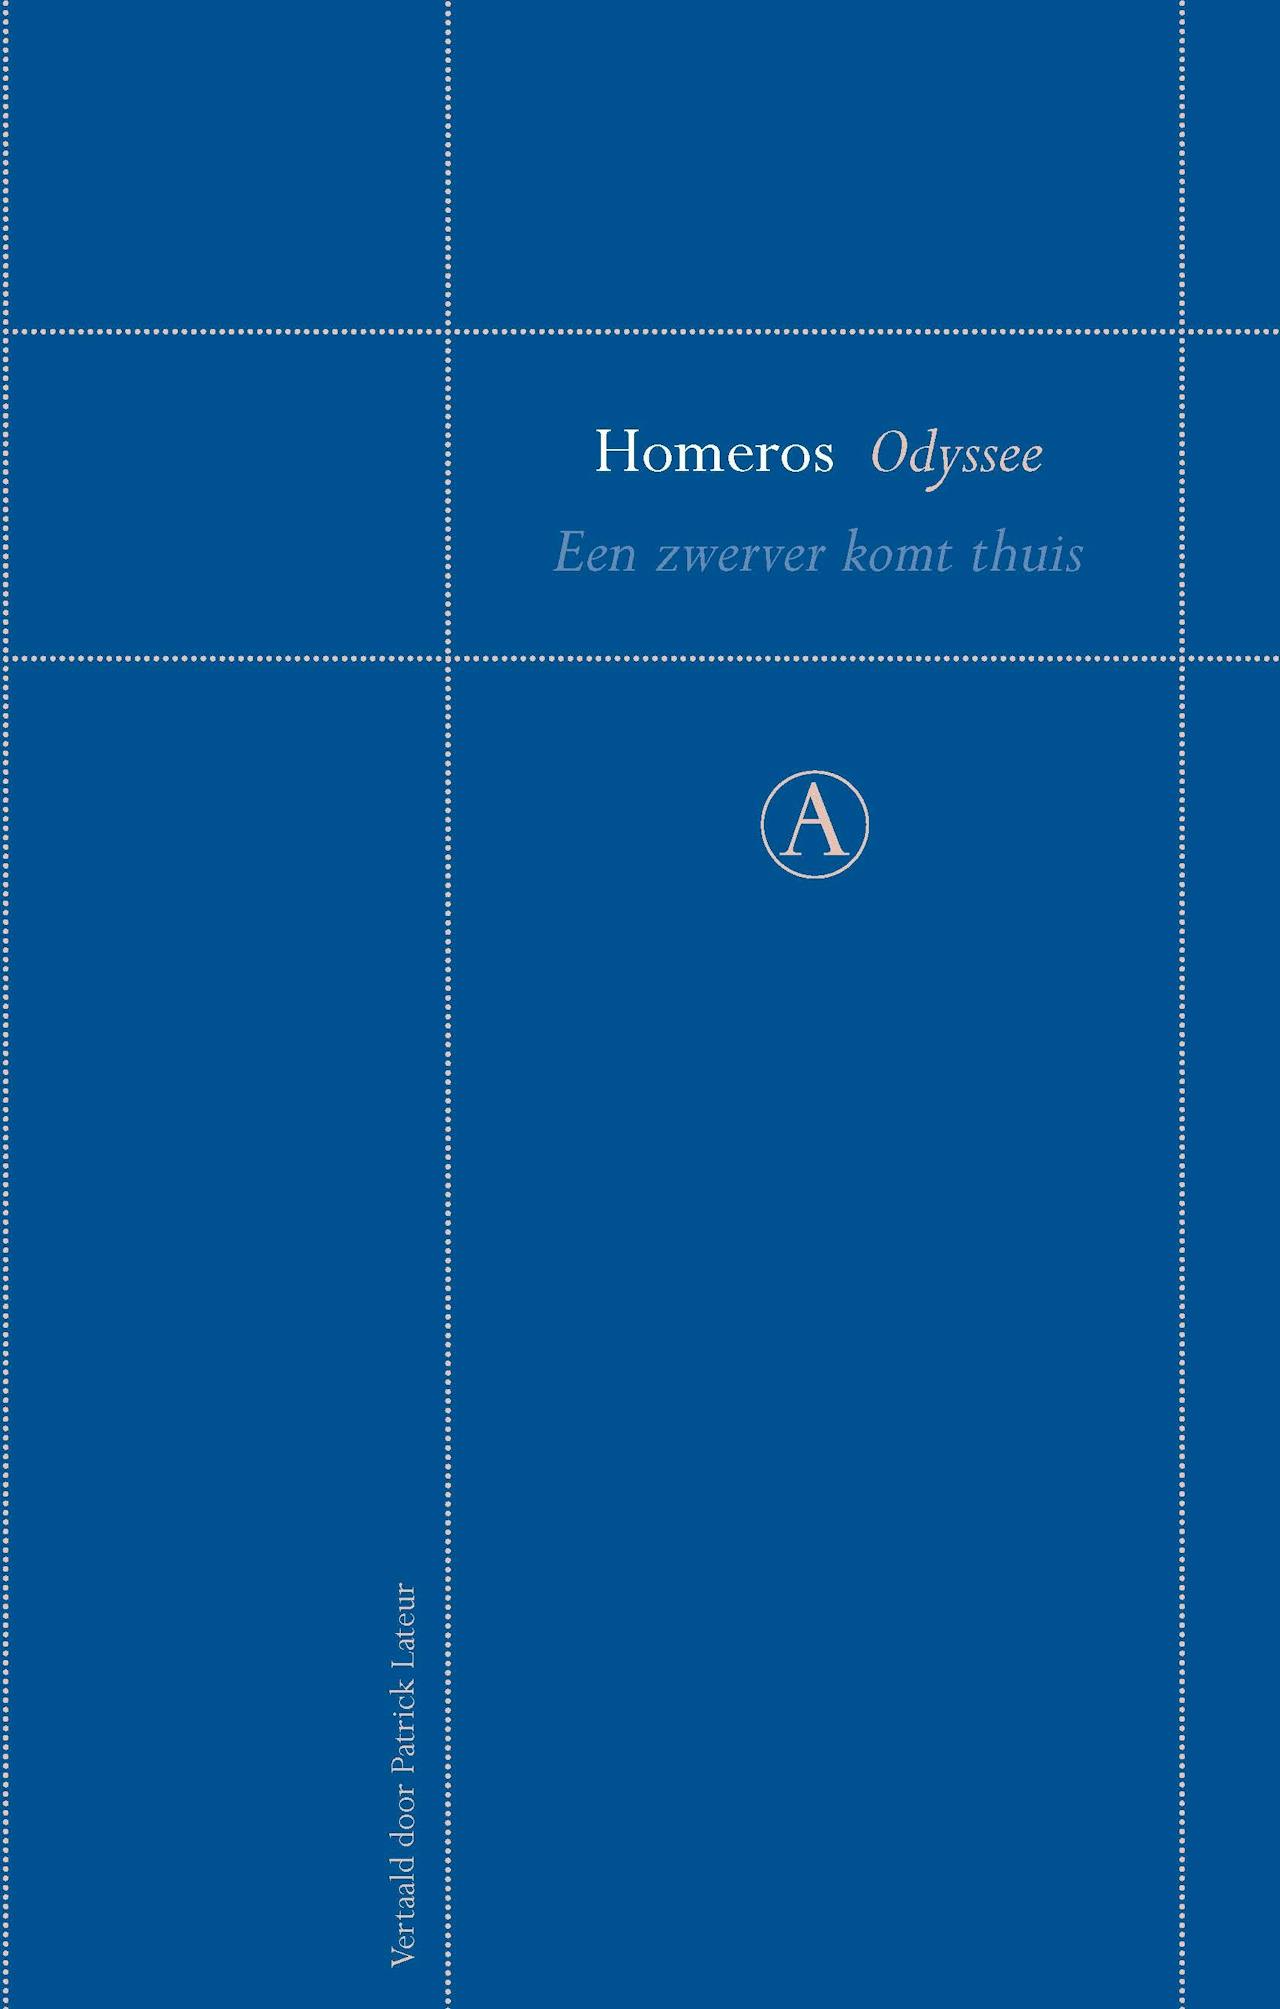 De cover van Odyssee Homeros een zwerver komt thuis.